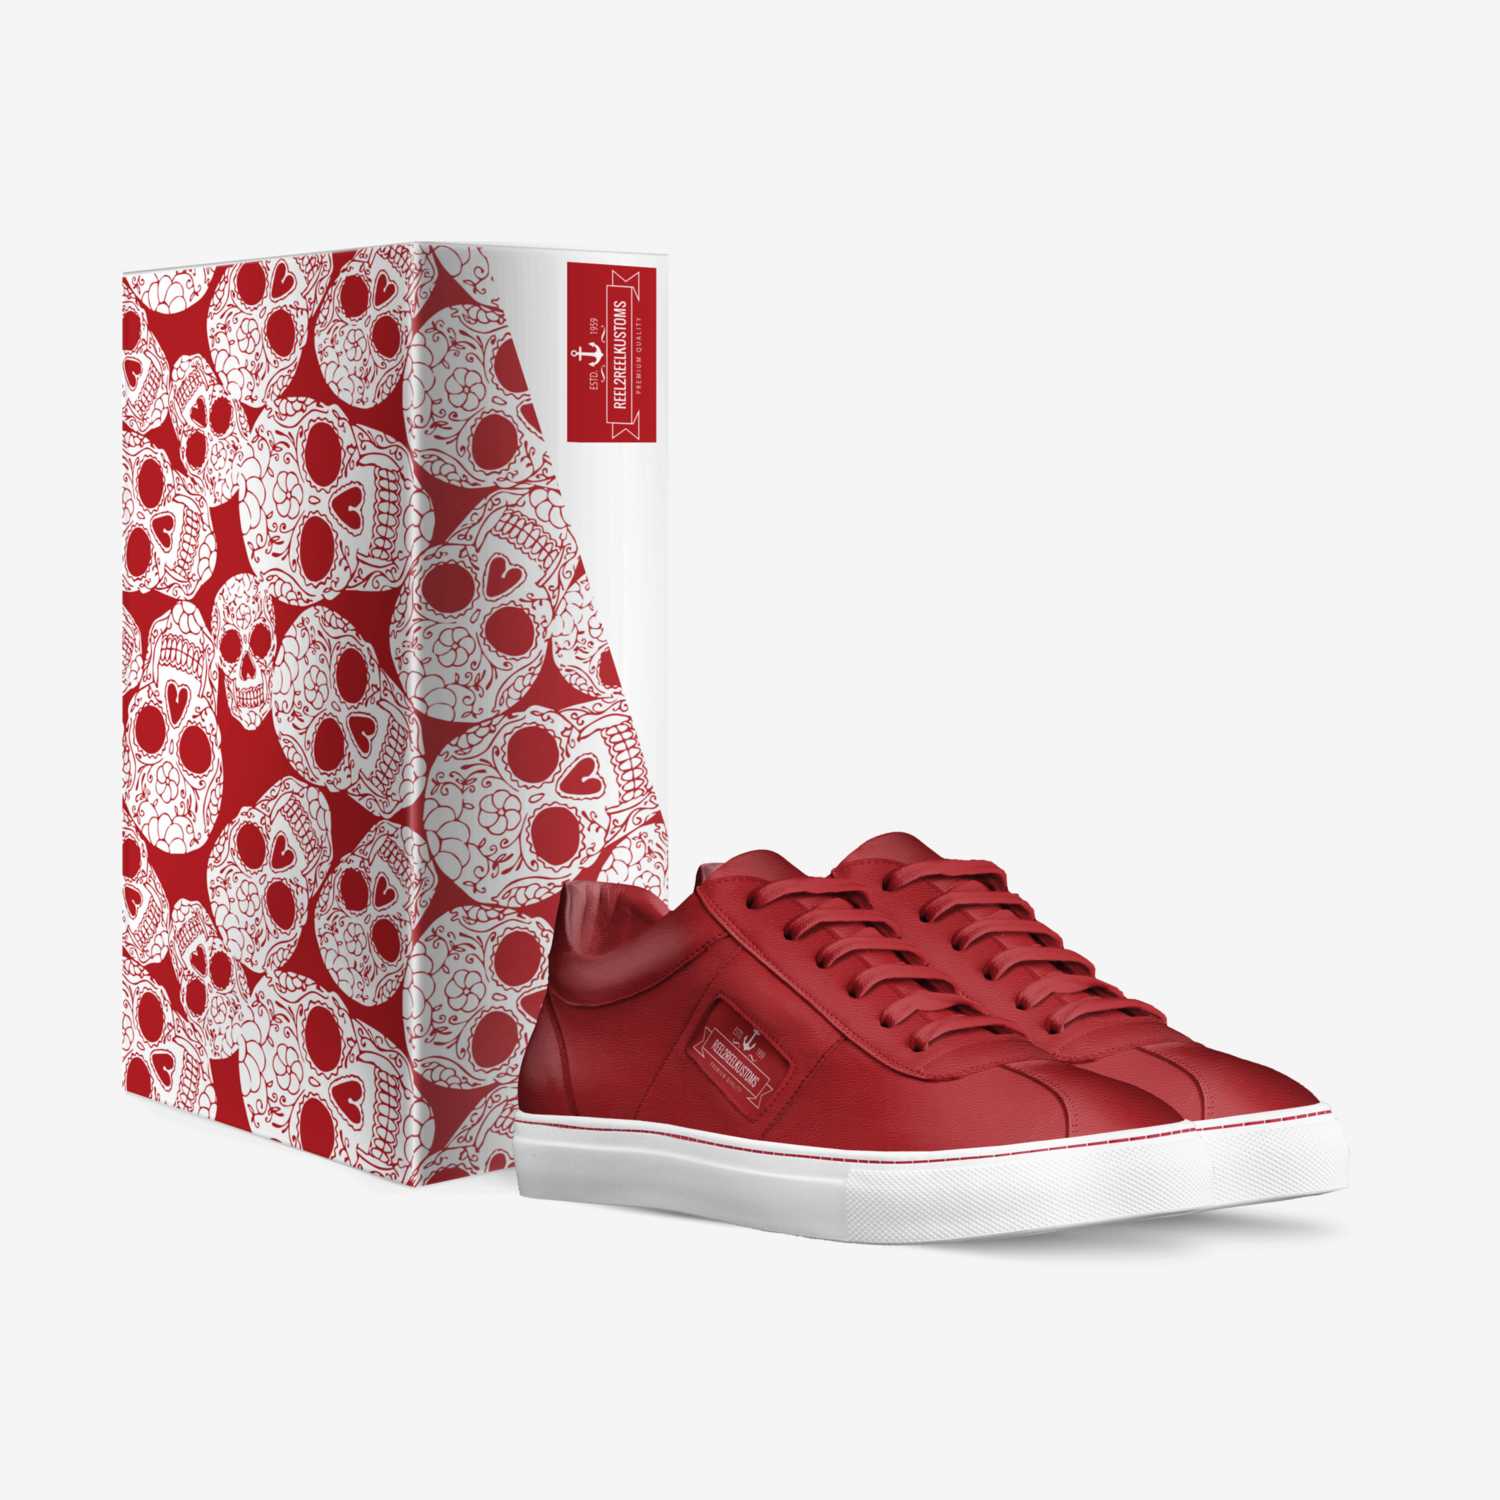 REEL2REEL custom made in Italy shoes by Reel2reel Kustoms | Box view